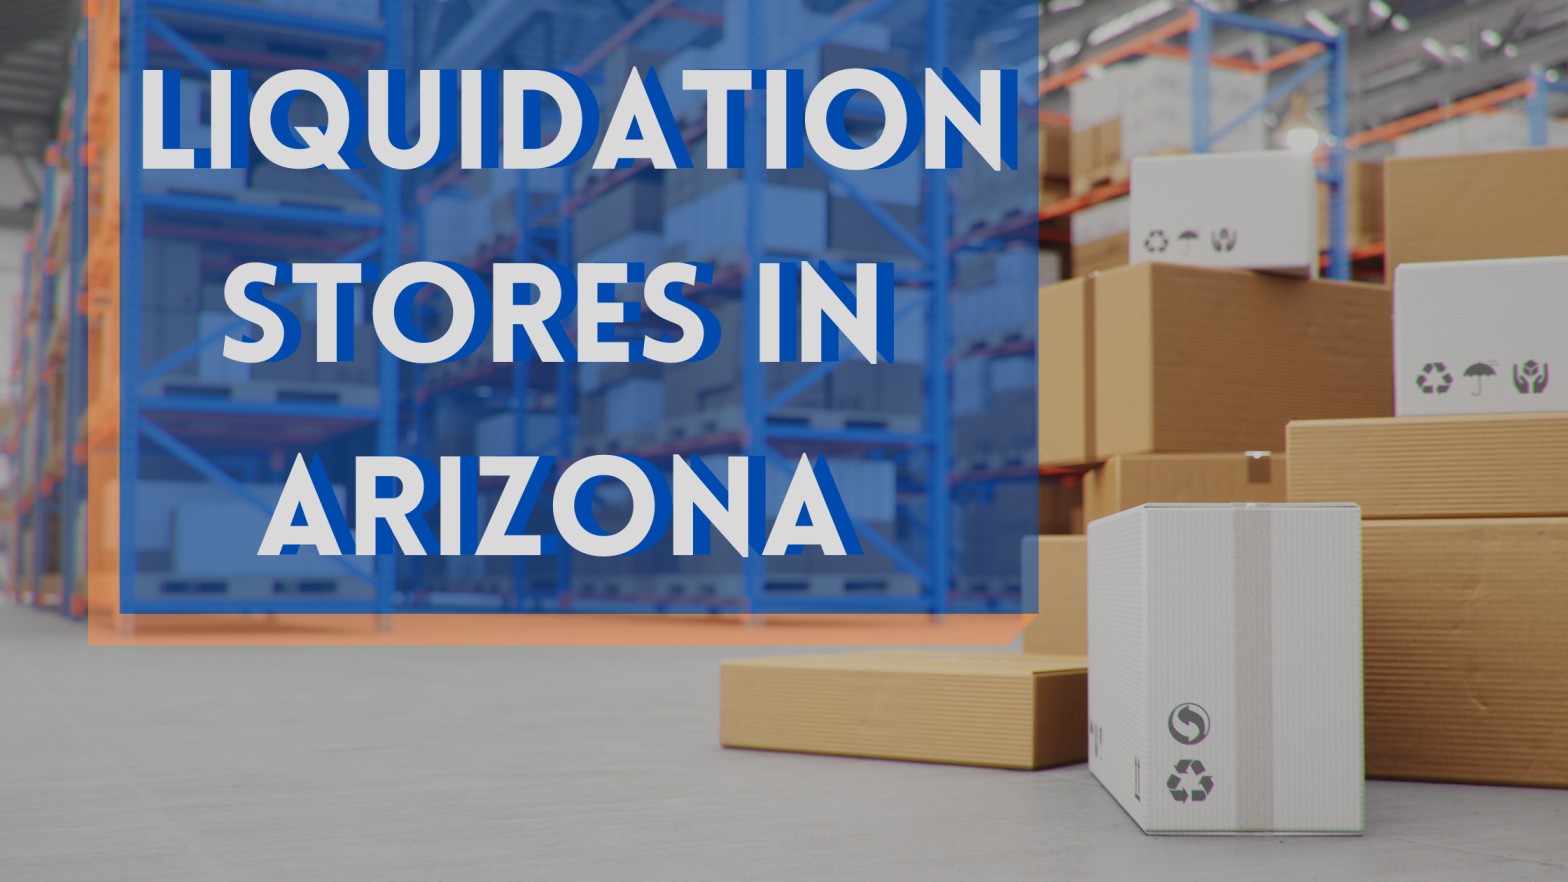 Liquidation Stores in Arizona